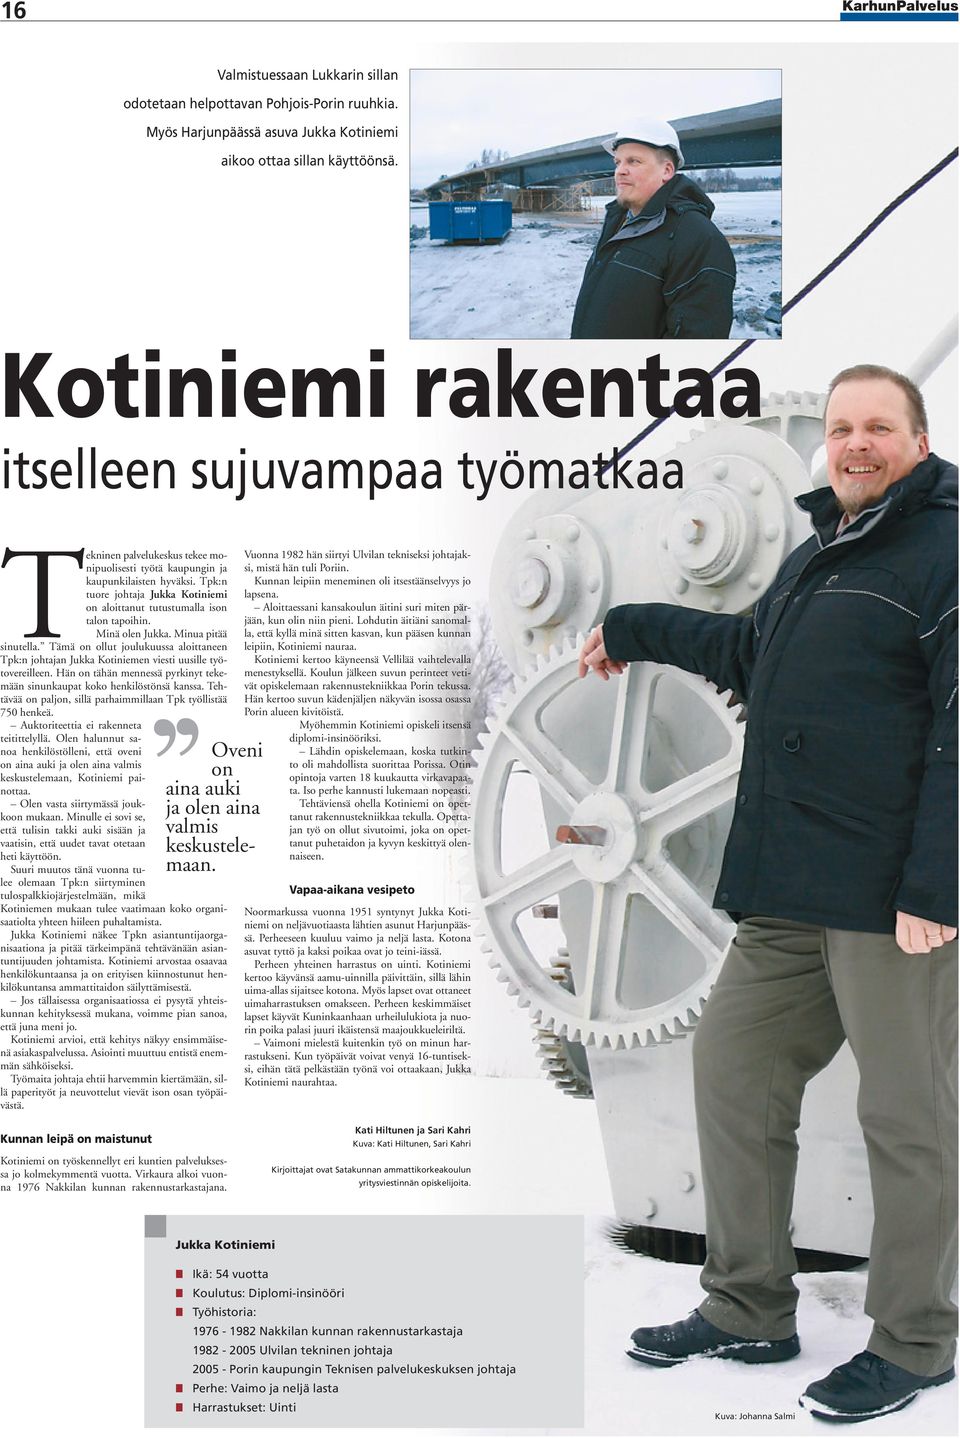 Tpk:n tuore johtaja Jukka Kotiniemi on aloittanut tutustumalla ison talon tapoihin. Minä olen Jukka. Minua pitää sinutella.